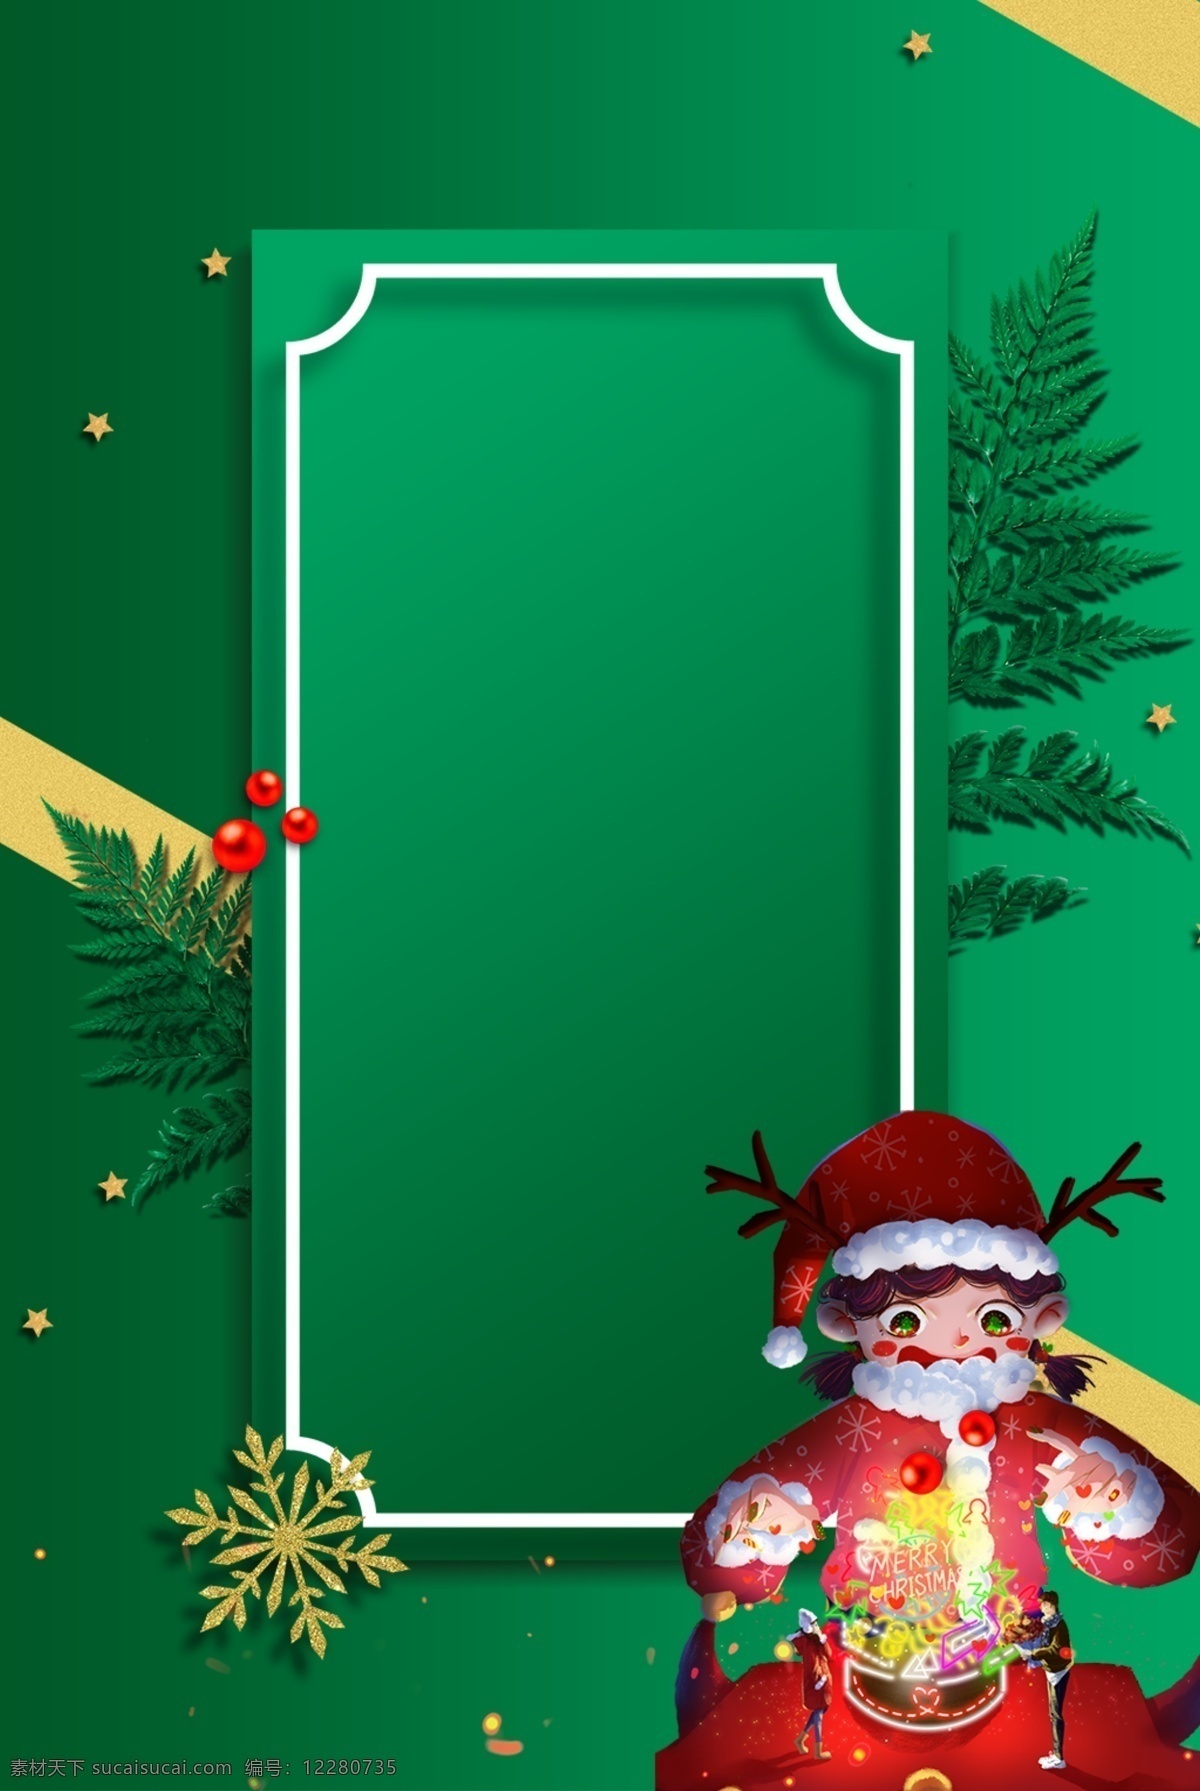 圣诞节 海报 背景 圣诞 圣诞节背景 圣诞节素材 绿色背景 圣诞礼物 圣诞老人 西方节日